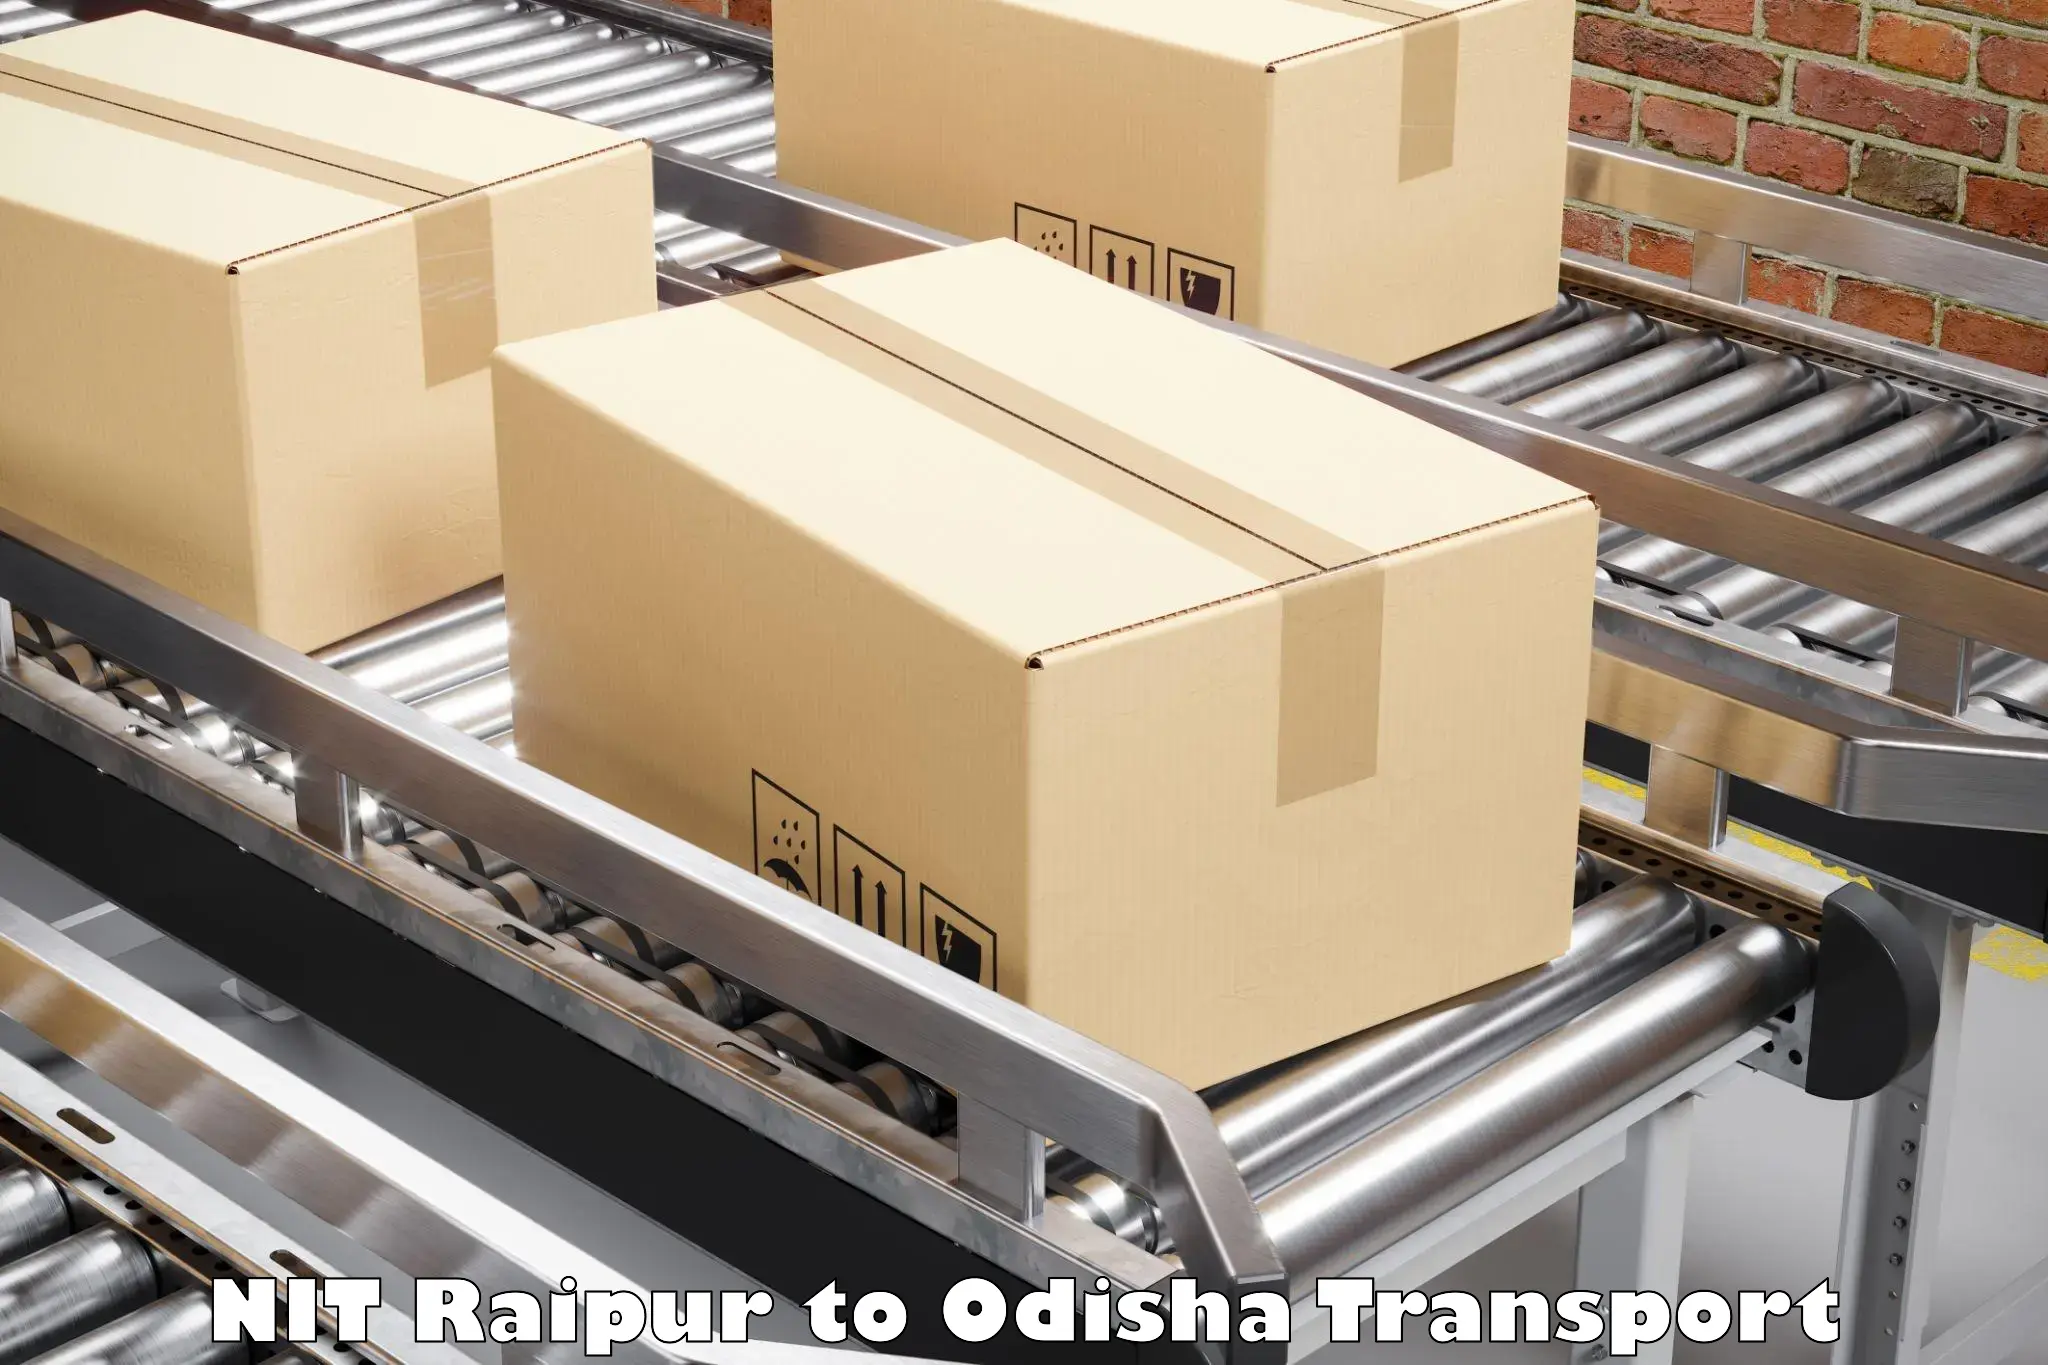 Furniture transport service NIT Raipur to Asika